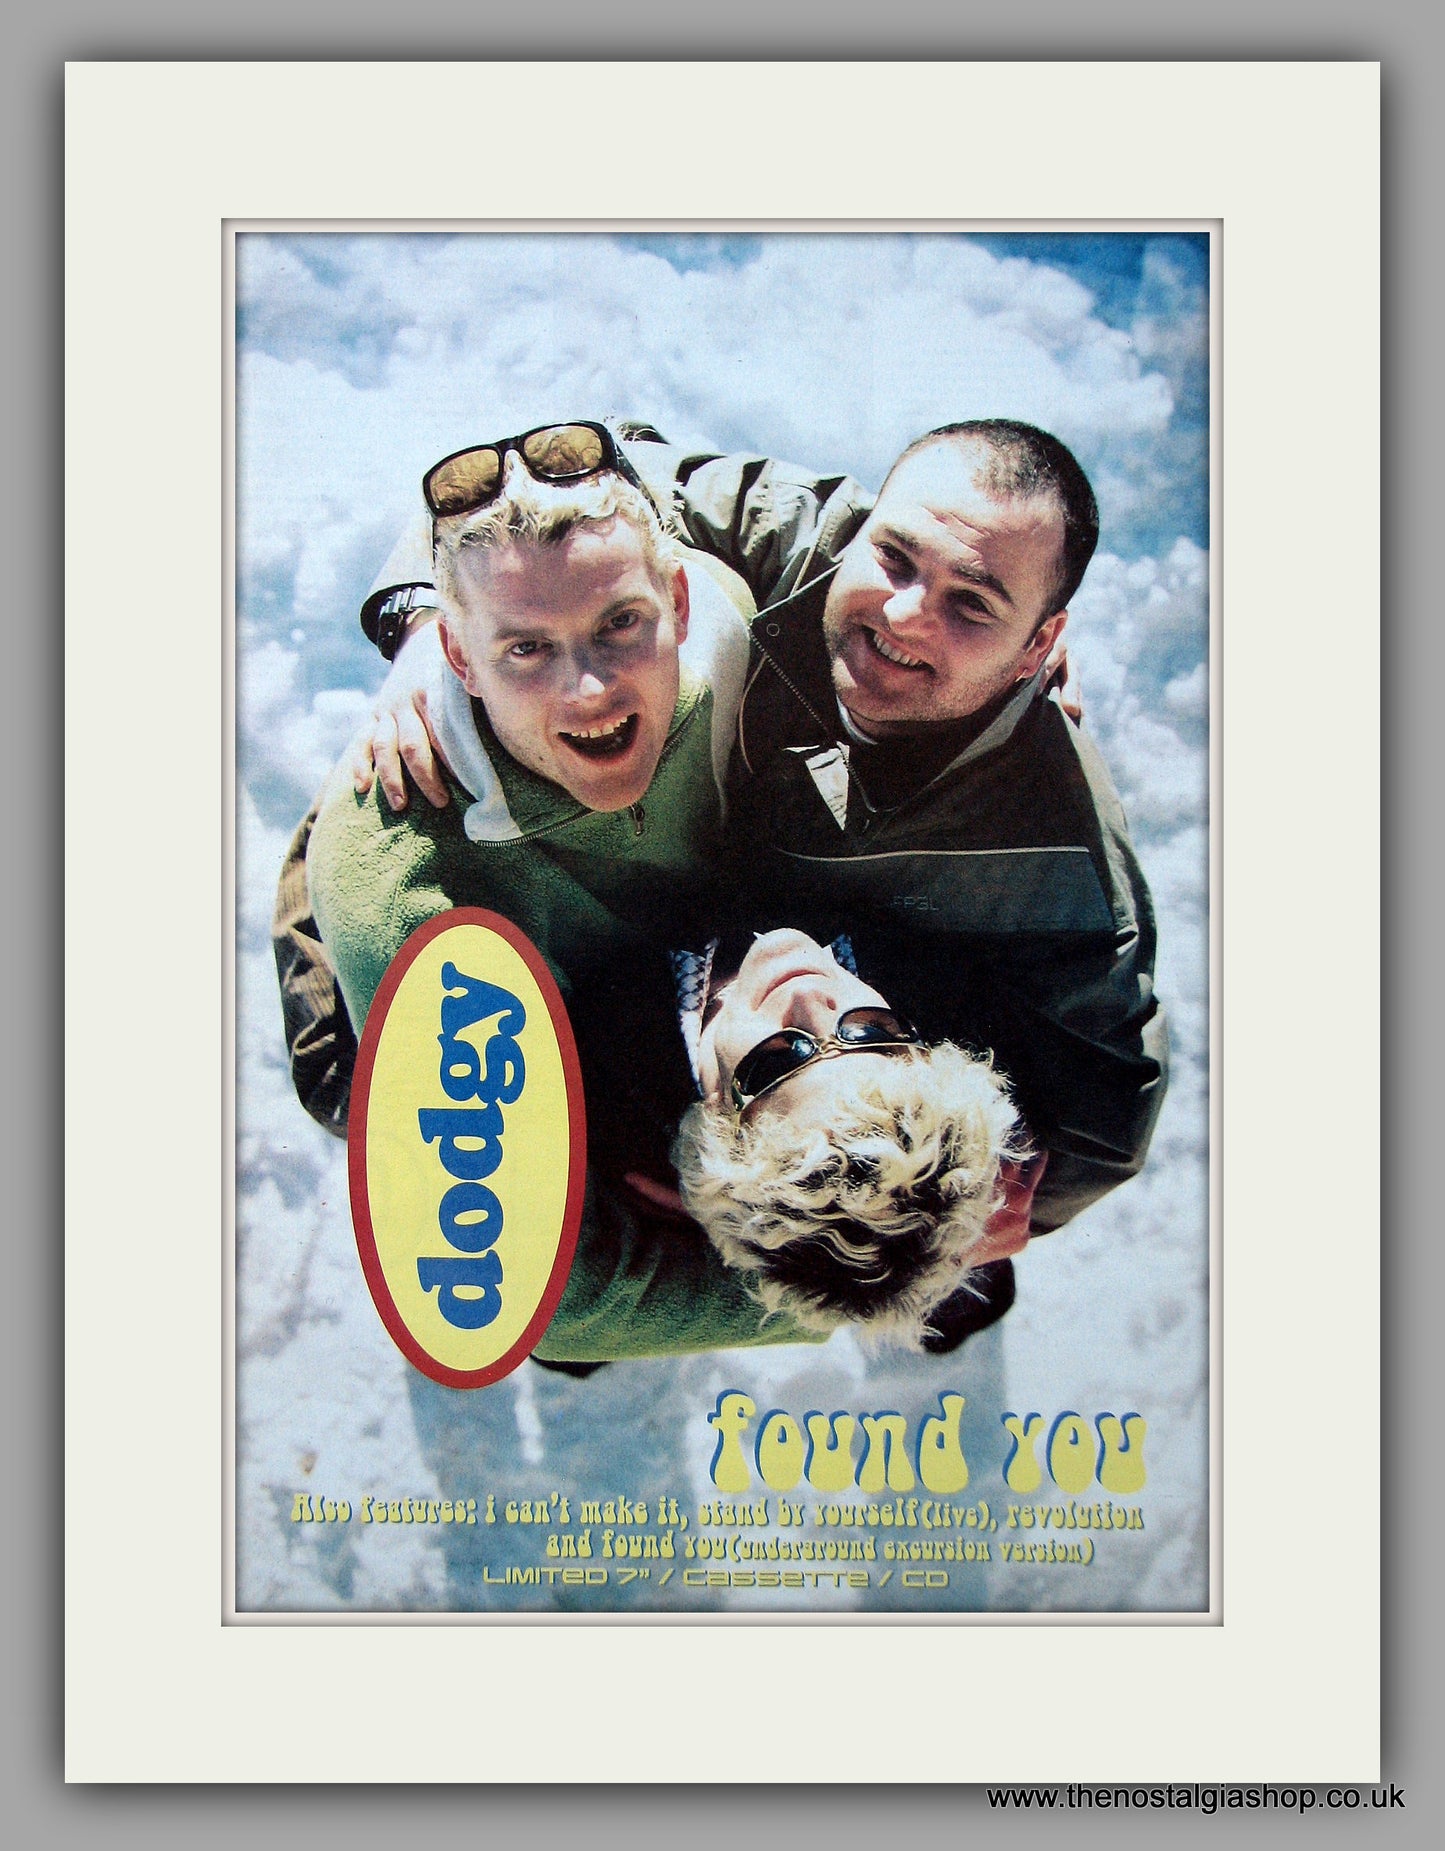 Dodgy - Found You.  Original Vintage Advert 1997 (ref AD10707)